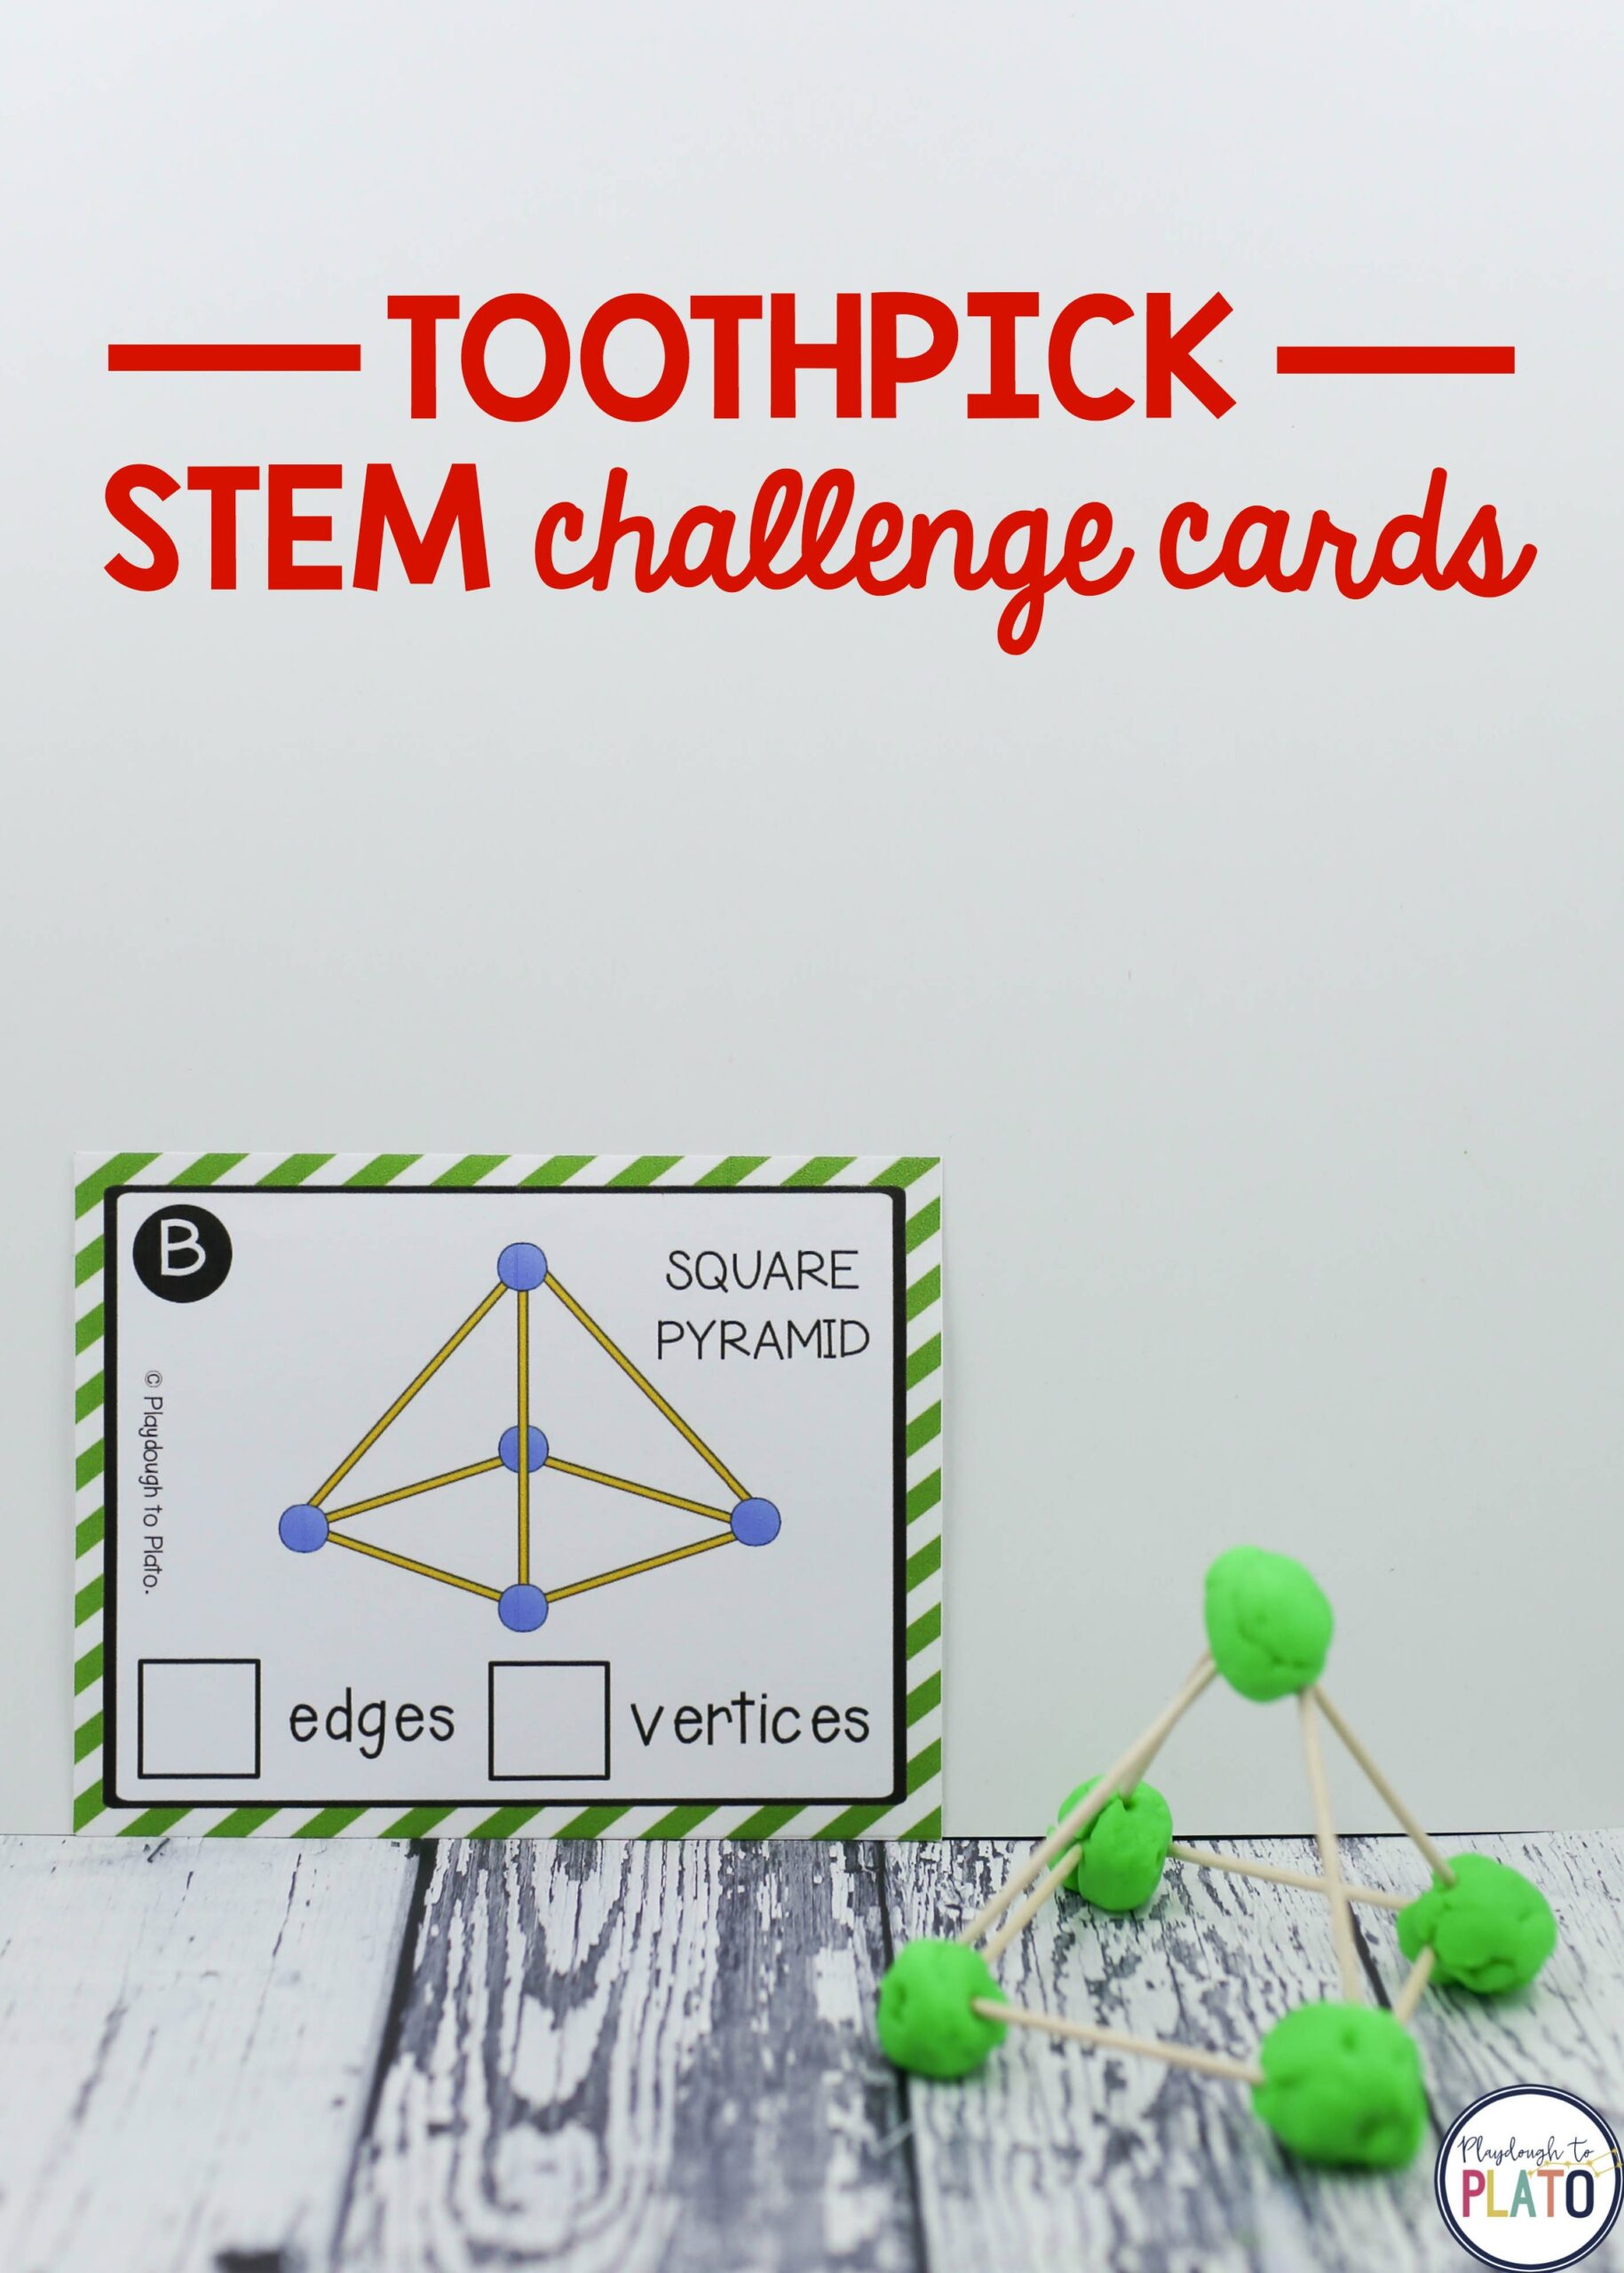 toothpick-stem-challenge-cards-the-stem-laboratory